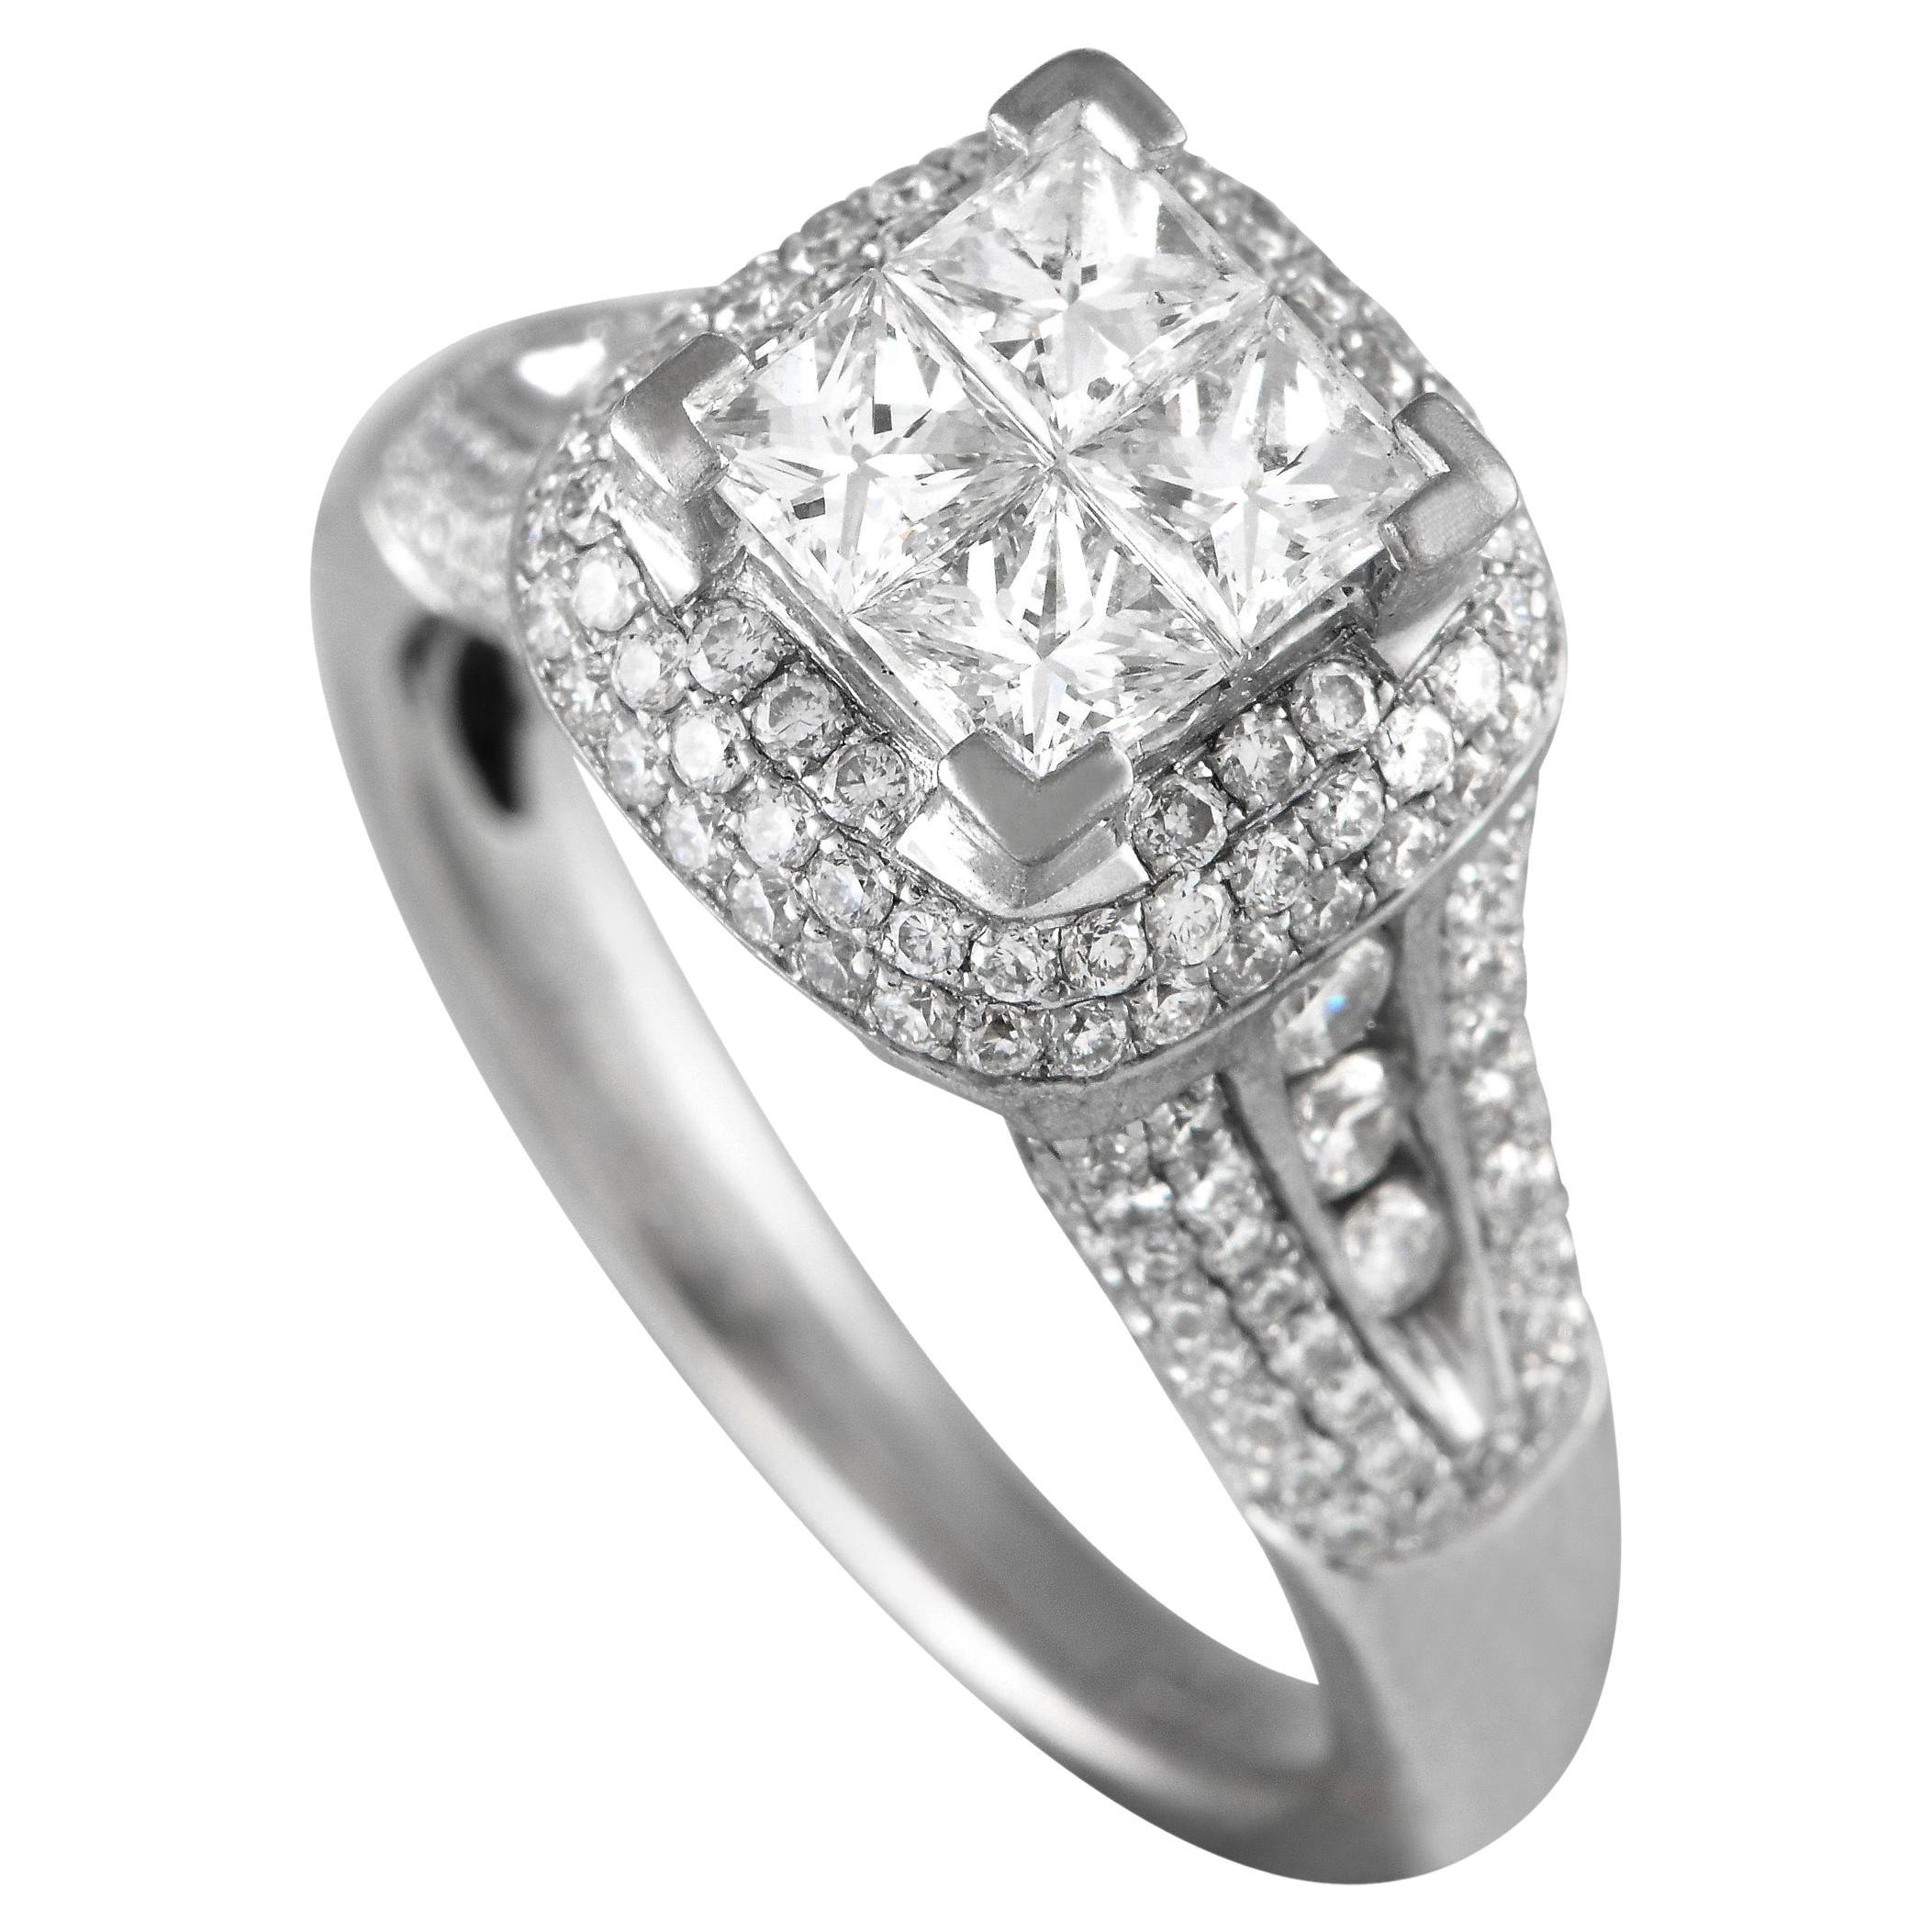 Gregg Ruth 18K White Gold 1.85ct Diamond Ring